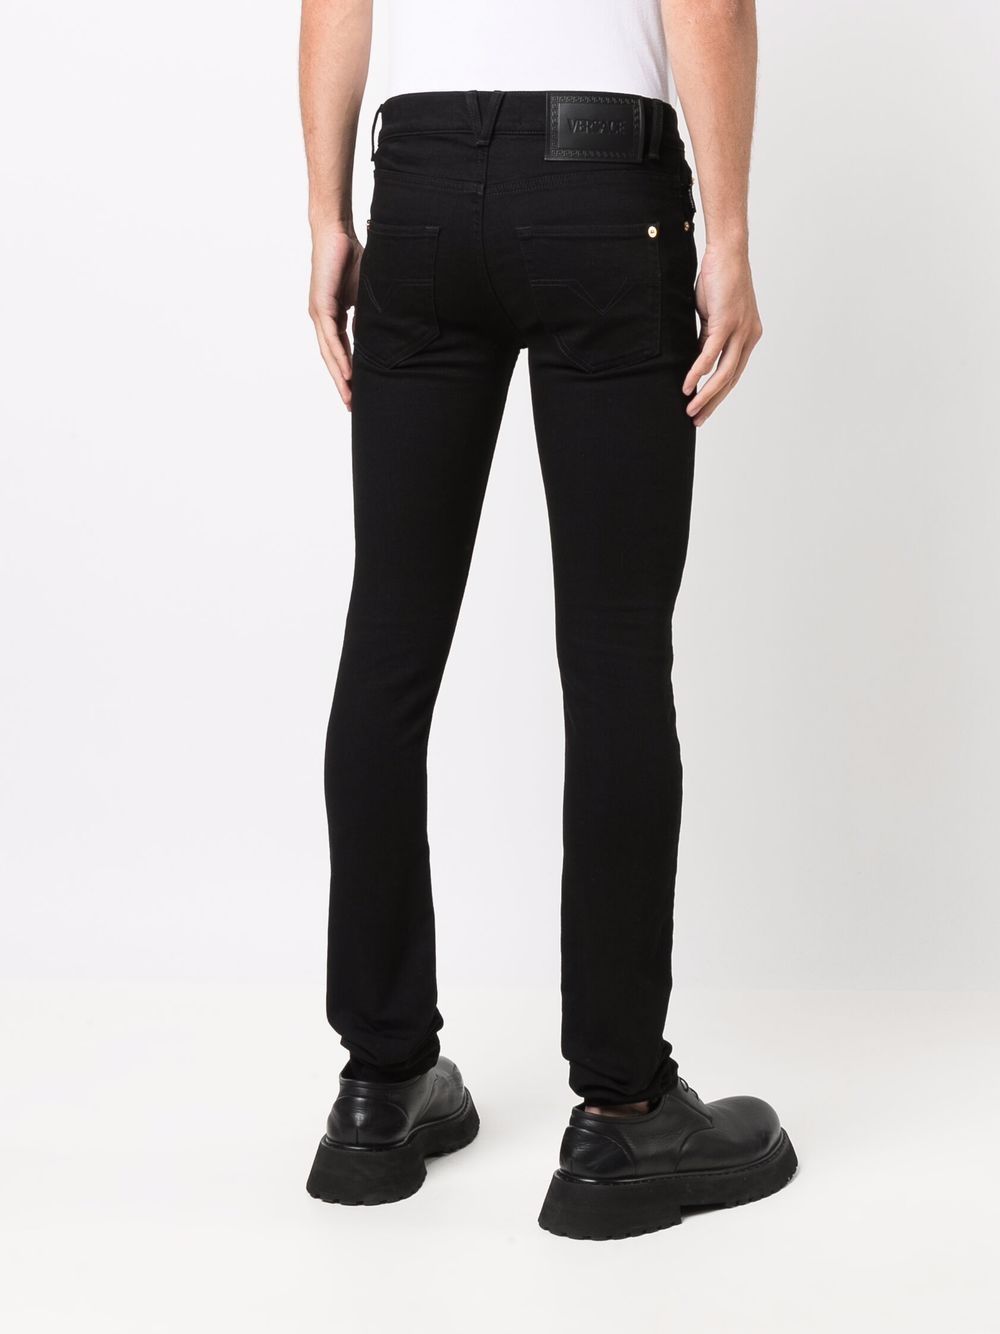 Versace Black Skinny Cut Jeans